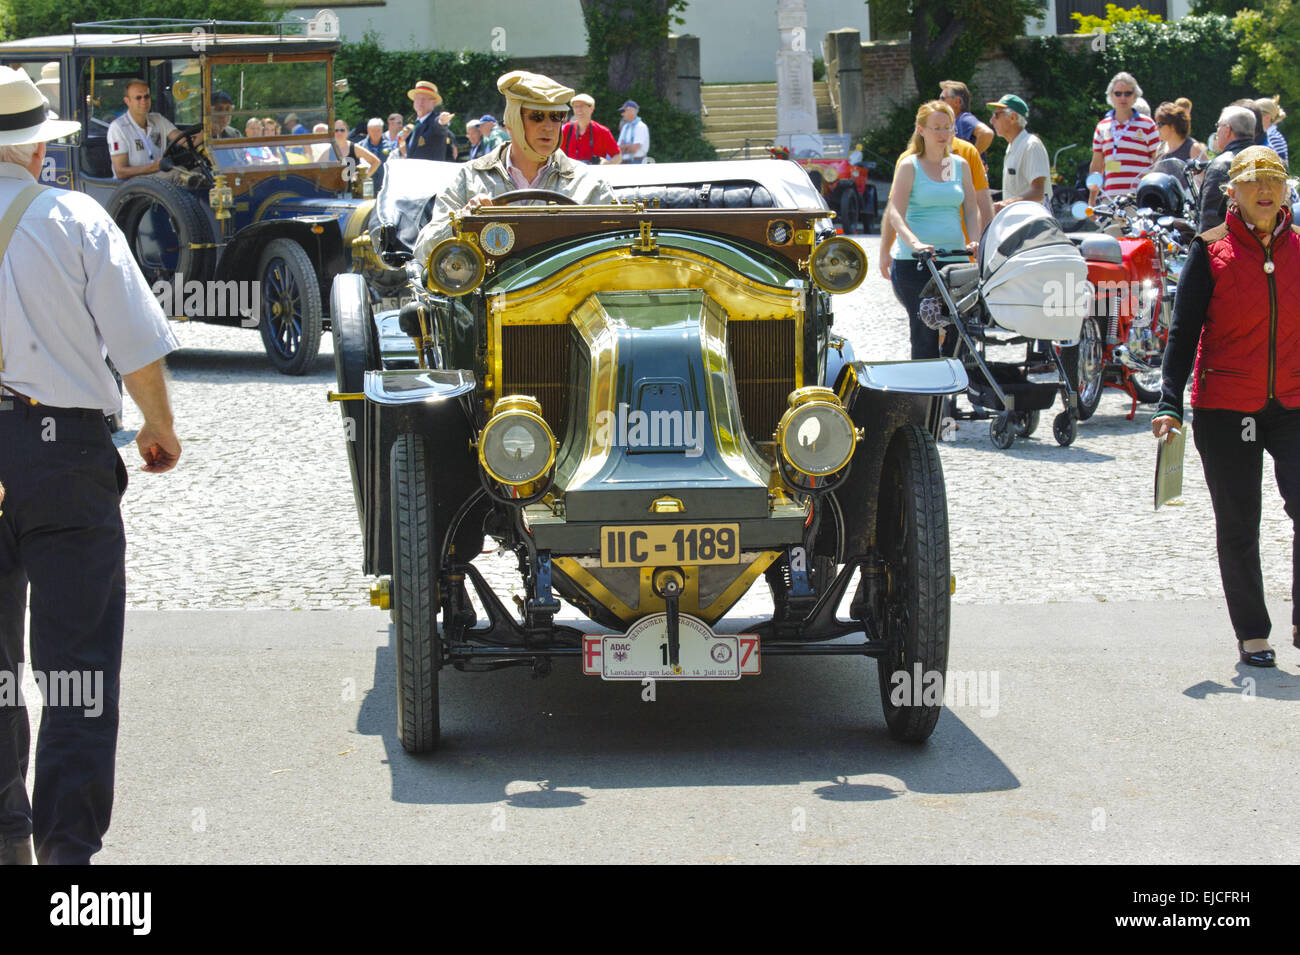 Oldtimer rally per antiche automobili classiche Foto Stock